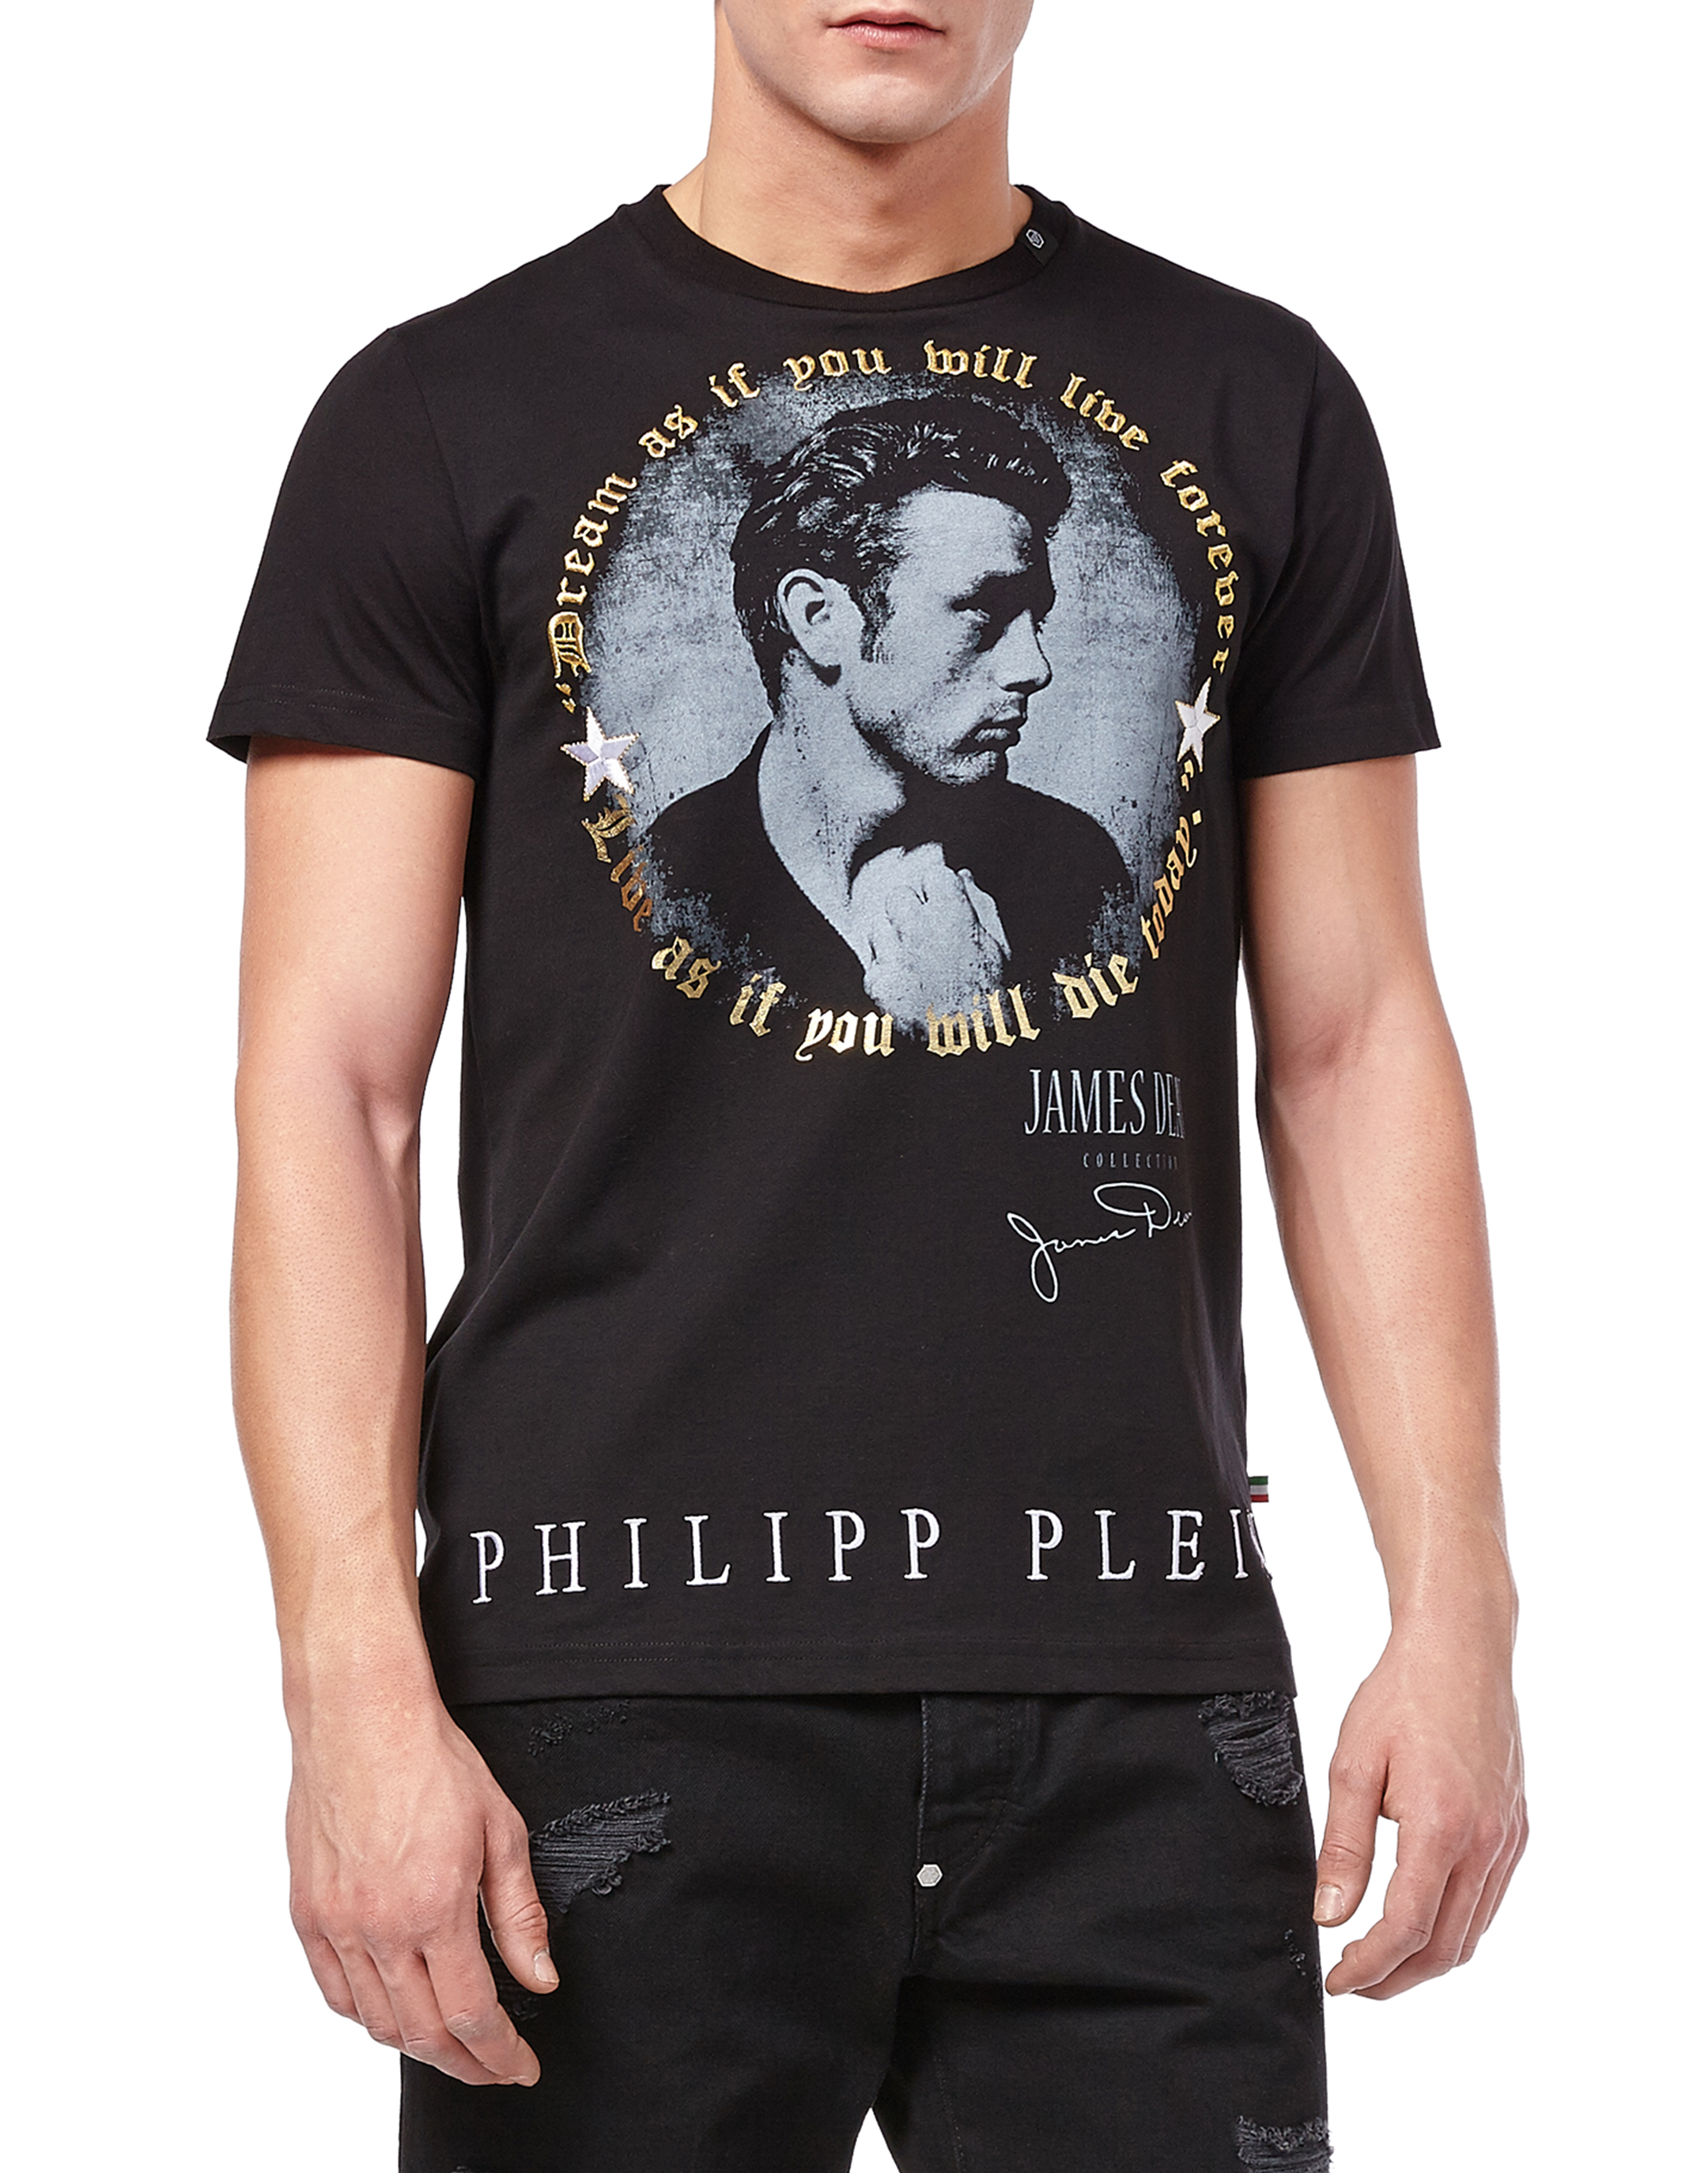 philipp plein james dean t shirt